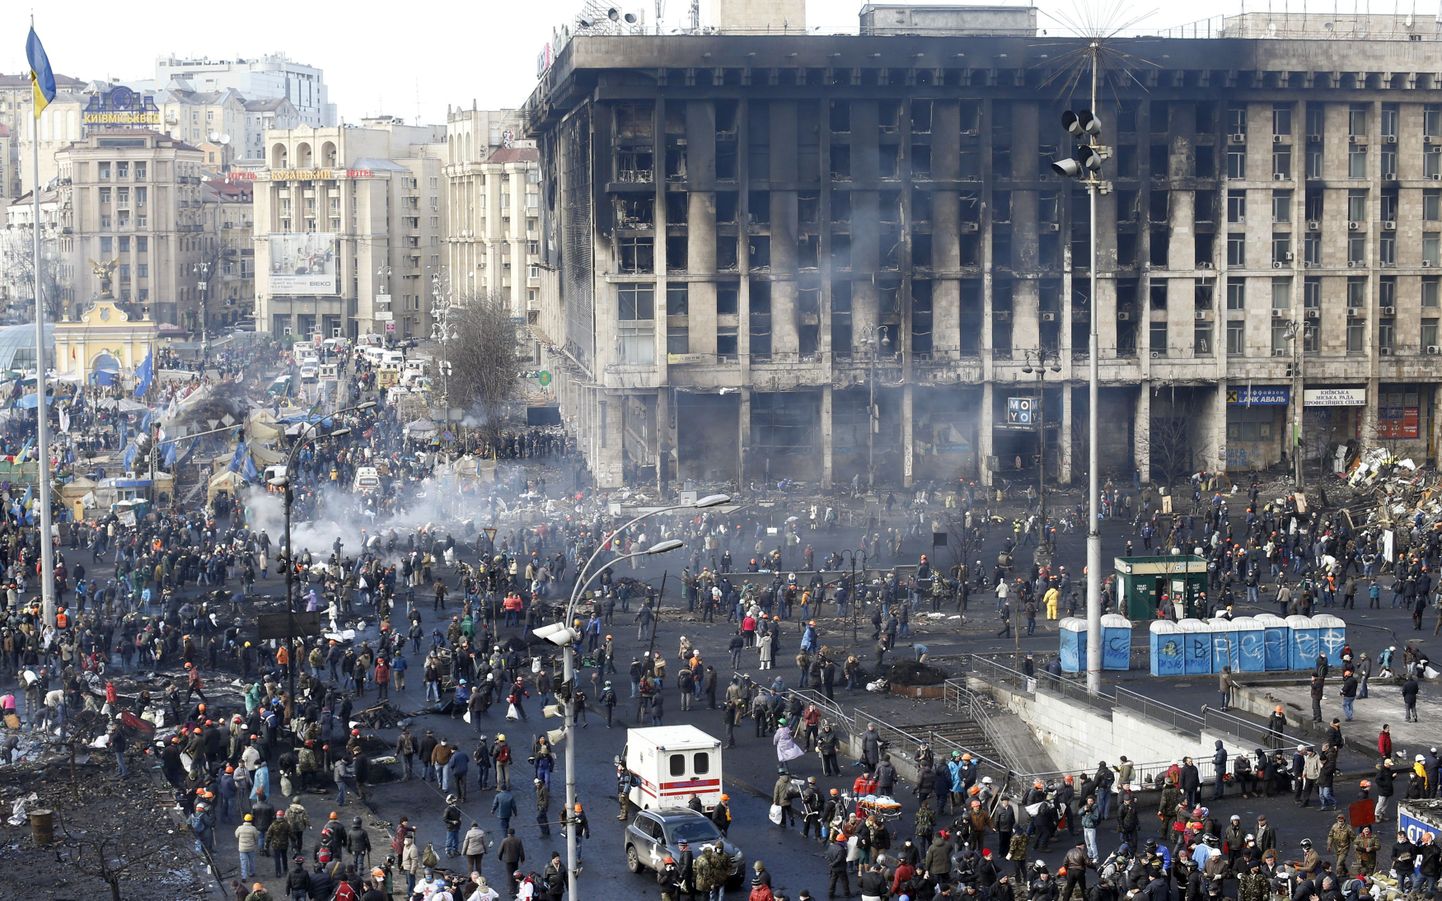 Ukrainlaste argipäev Maidanil 20. veebruari seisuga. Tules räsitud hooneks on ametiühingute maja.